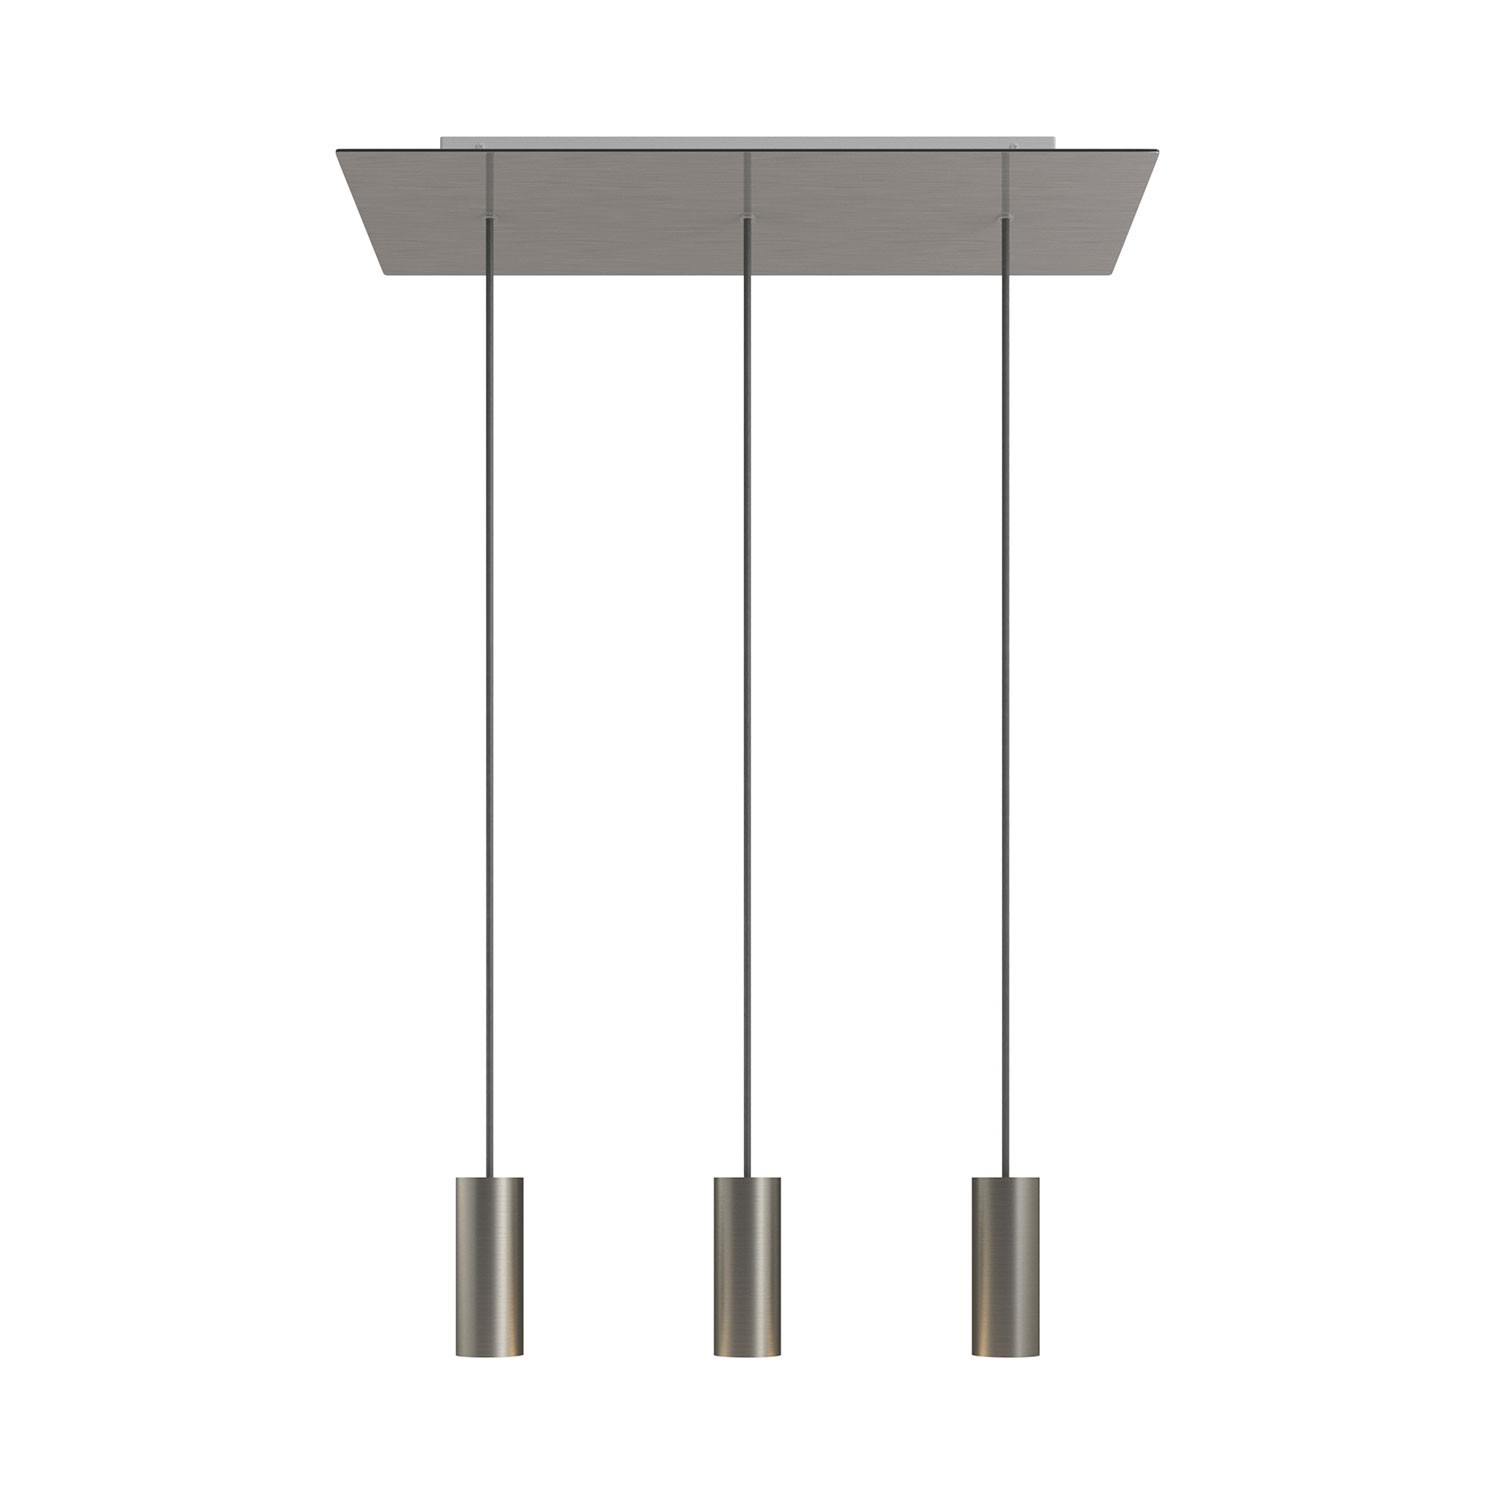 3 lichts-hanglamp voorzien van XXL rechthoekige Rose-One 675 mm compleet met strijkijzersnoer en Tub E14 metalen lampenkap